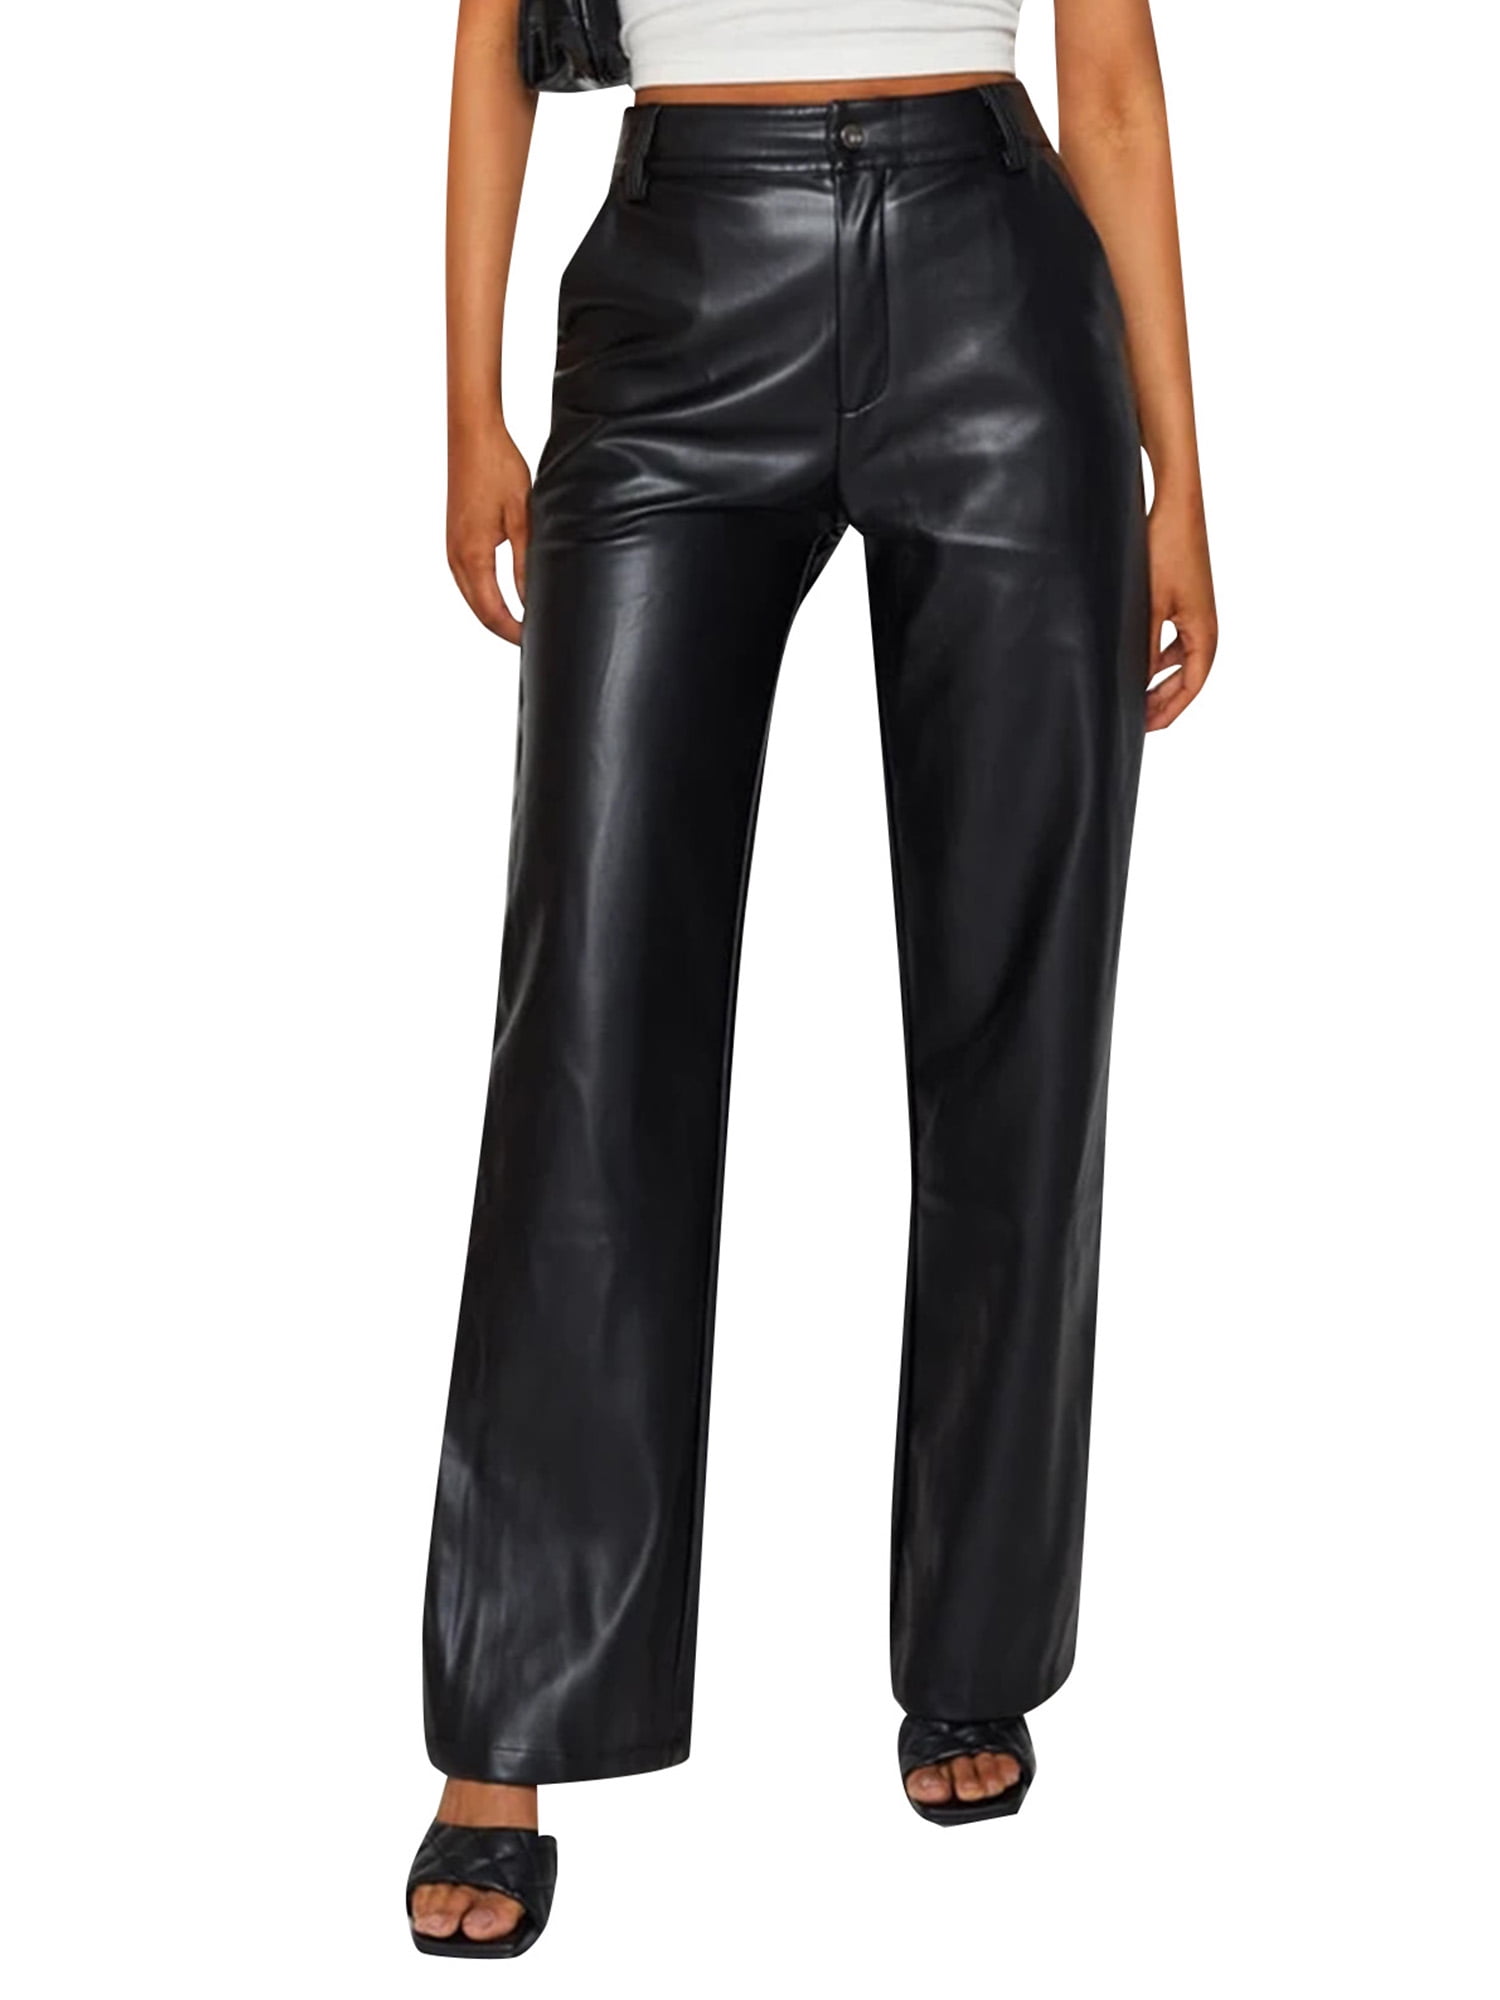 Multitrust Women High Waist Faux Leather Pants Solid Color Elastic 